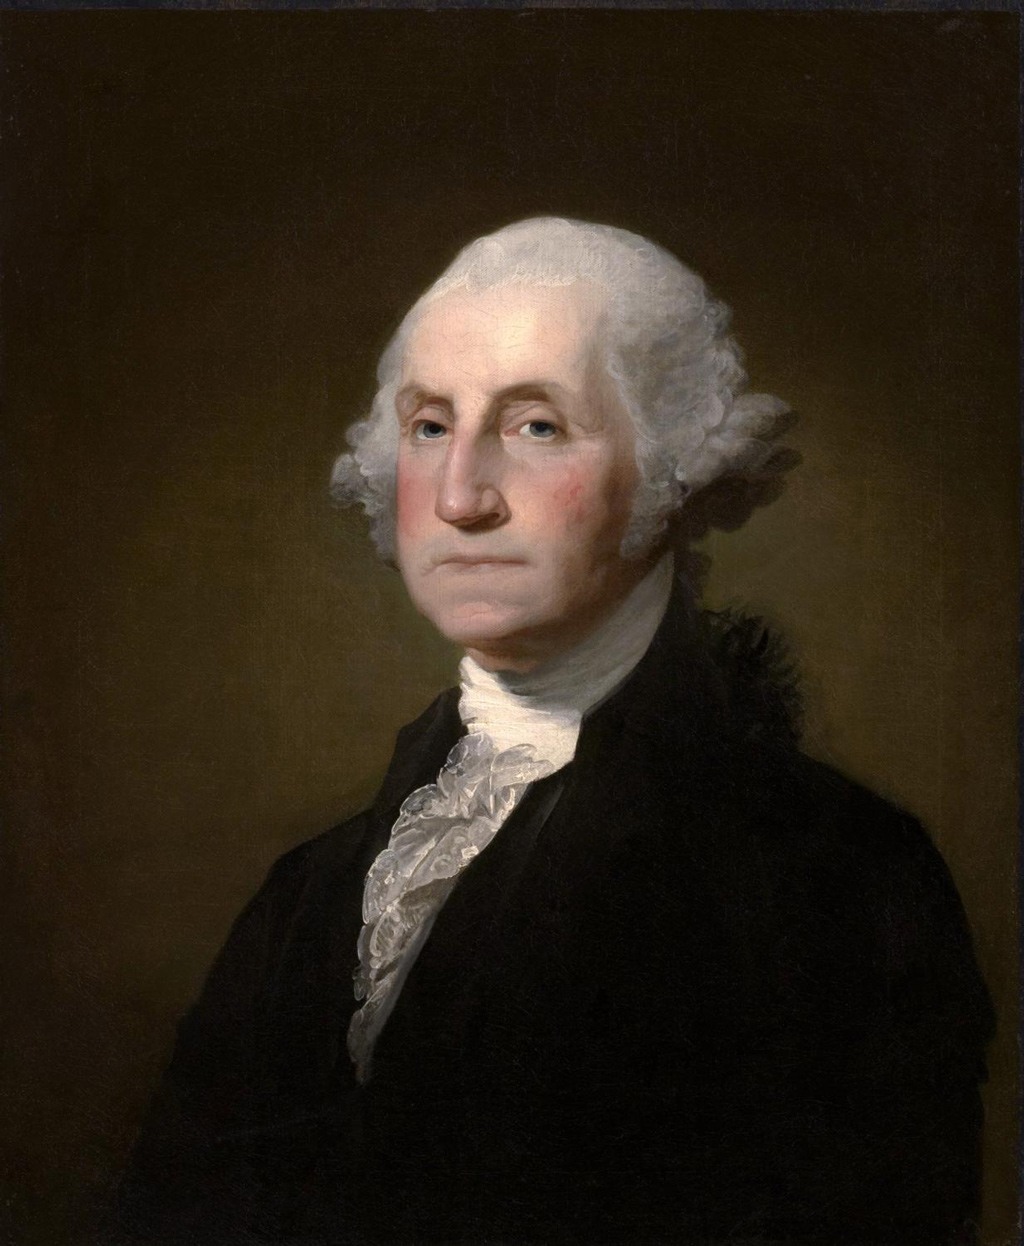 بورتريه للرئيس الأمريكي الأول (جورج واشنطن)، بريشة (جيلبرت ستيوارت) حوالي سنة 1797.